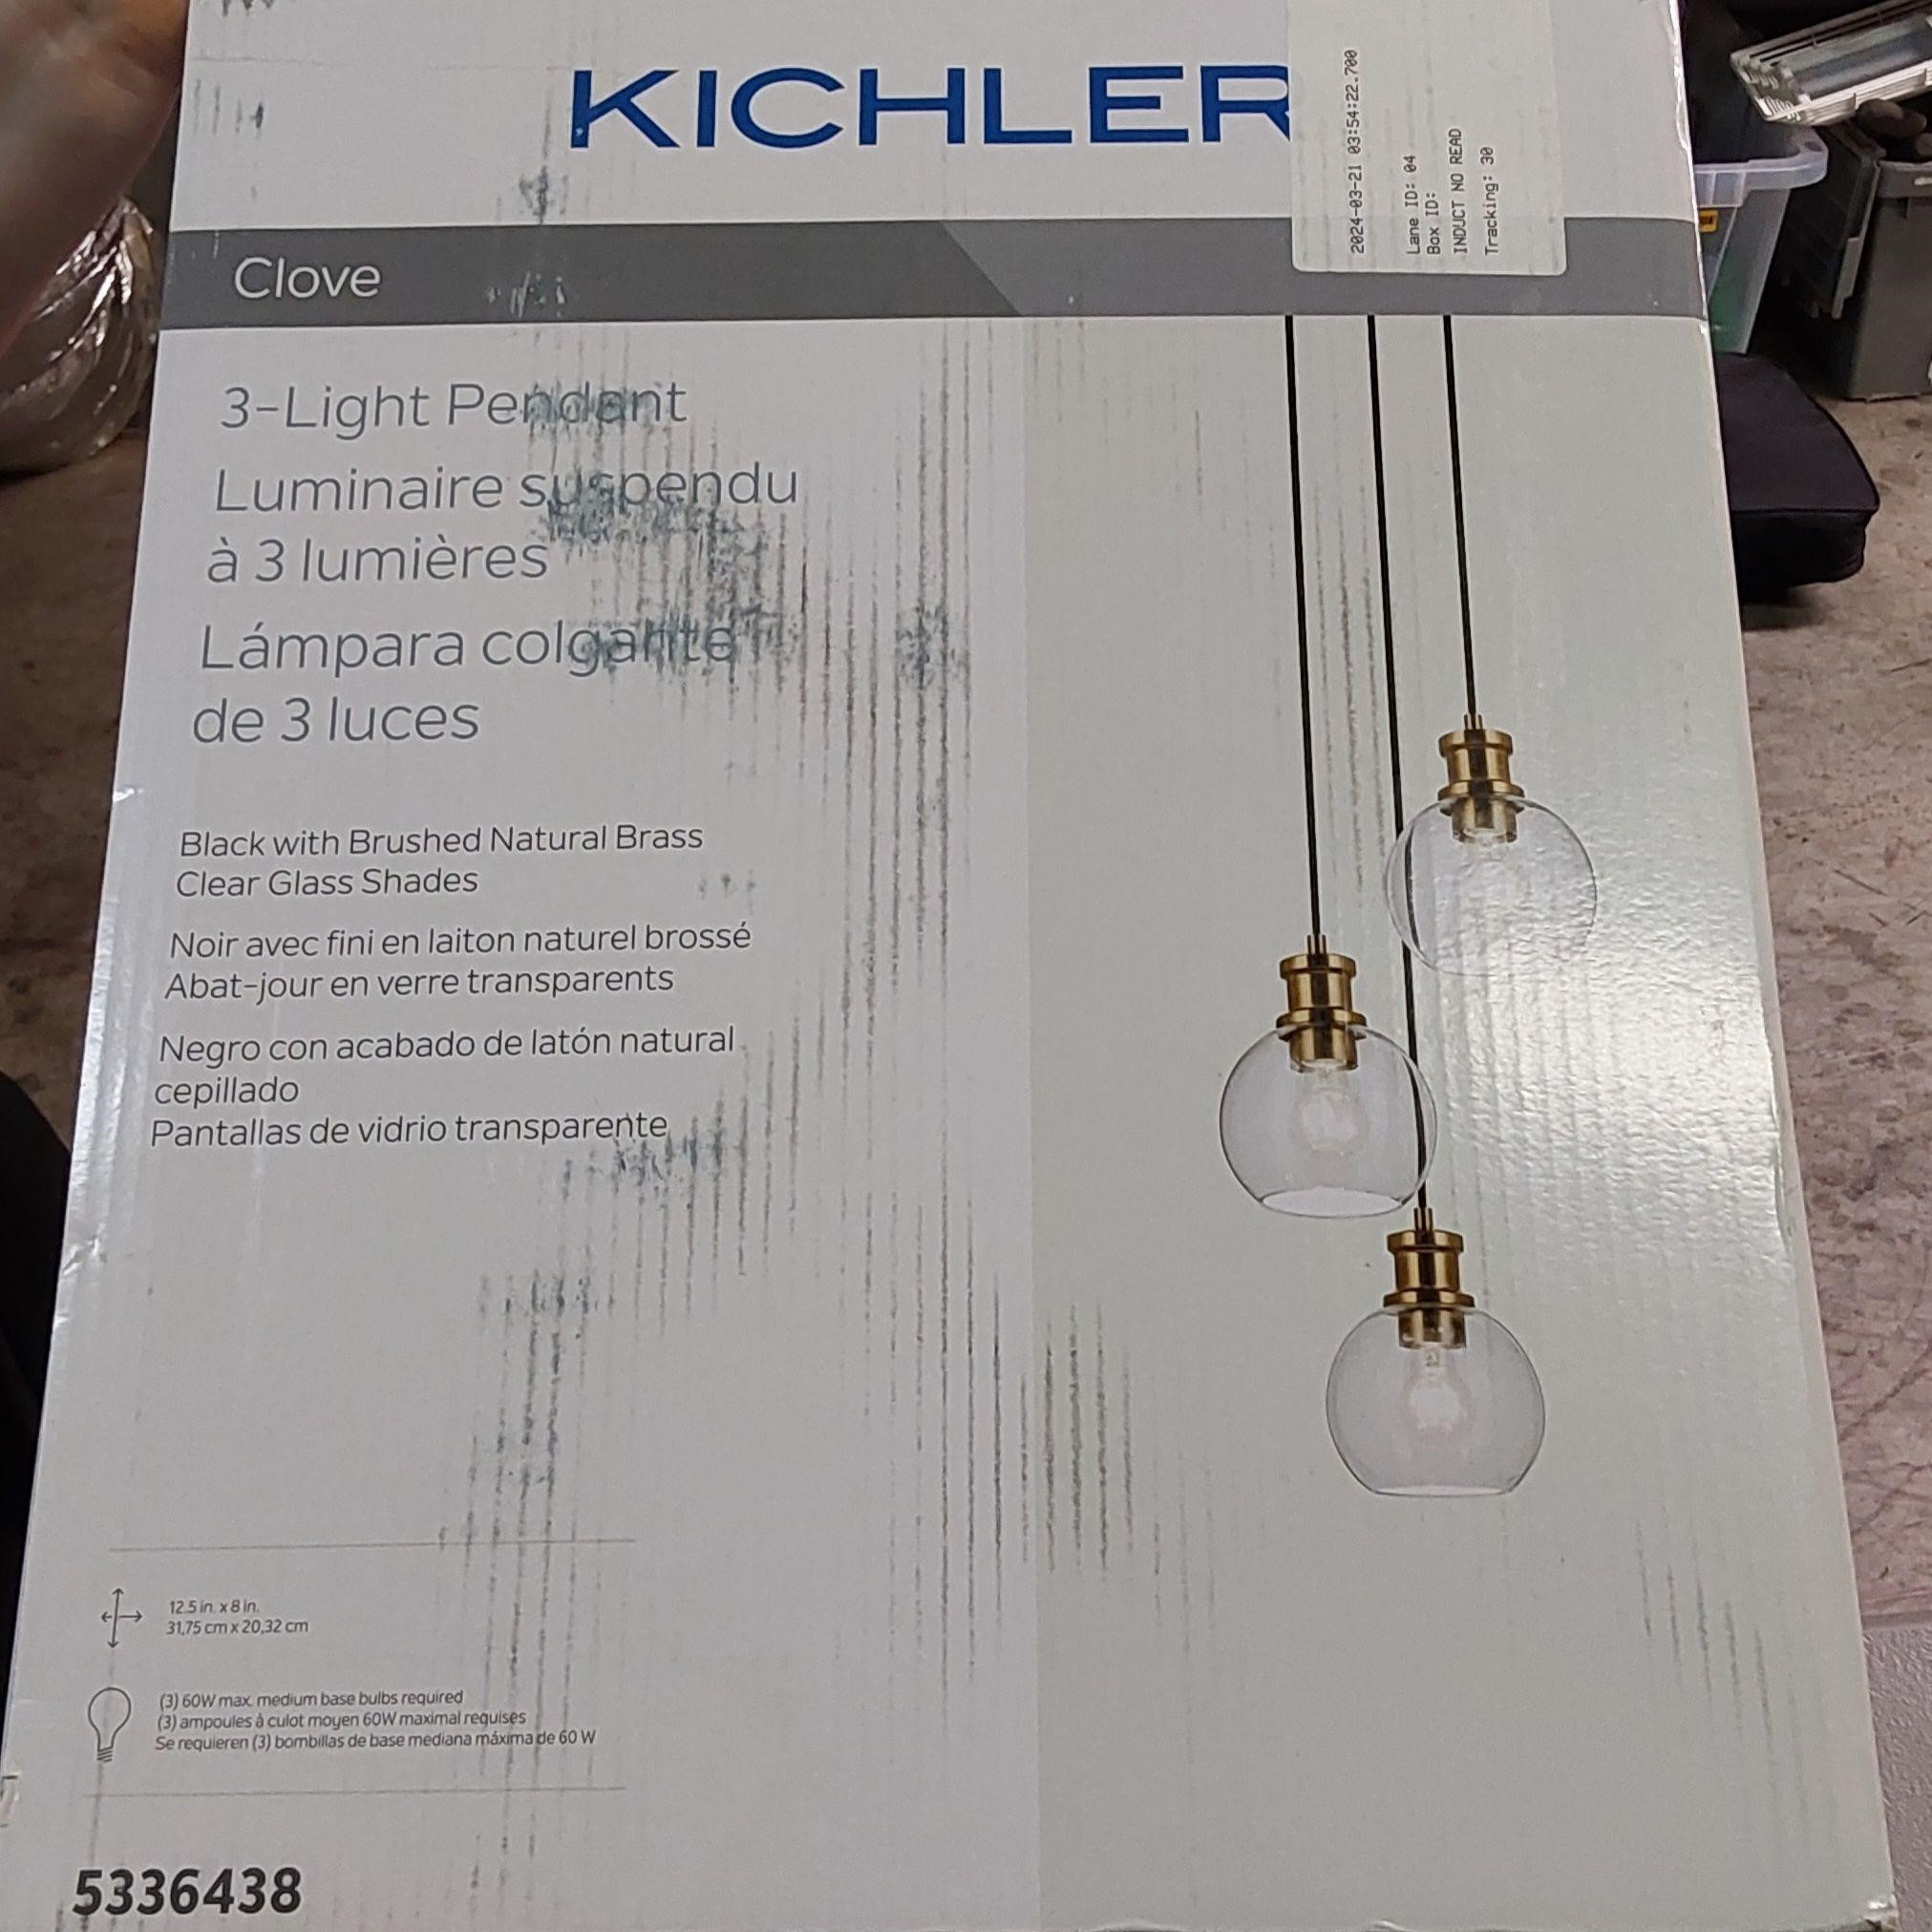 Kichler 3 Light Pendant